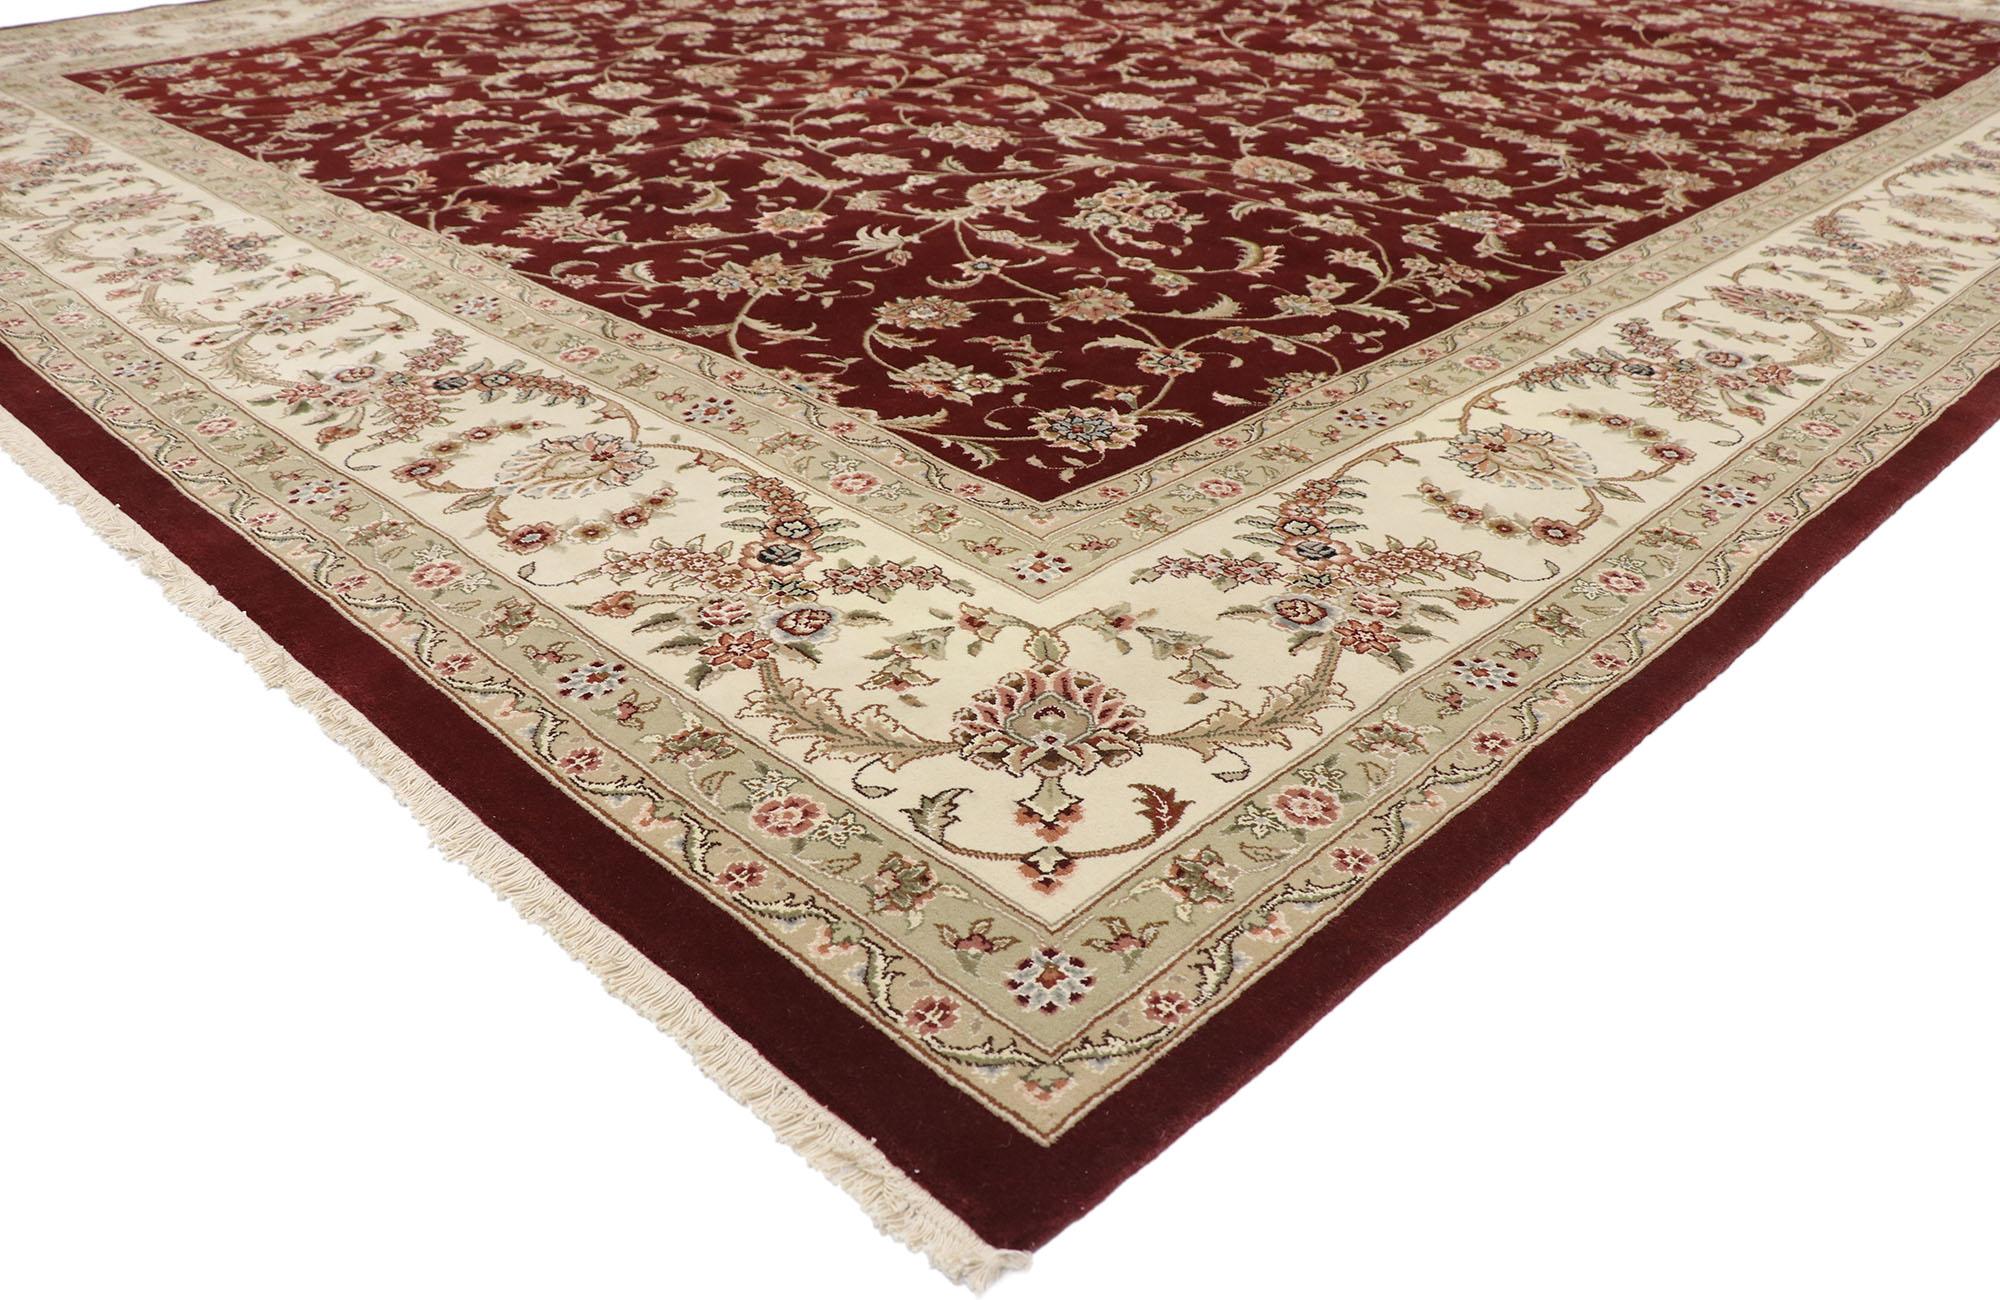 76697, tapis chinois persan vintage de style traditionnel Tabriz. Cet opulent tapis de style persan en laine nouée à la main présente un motif Herati de délicats Boteh et de fleurs stylisées dans un jardin frénétique de vignes arabesques dansantes